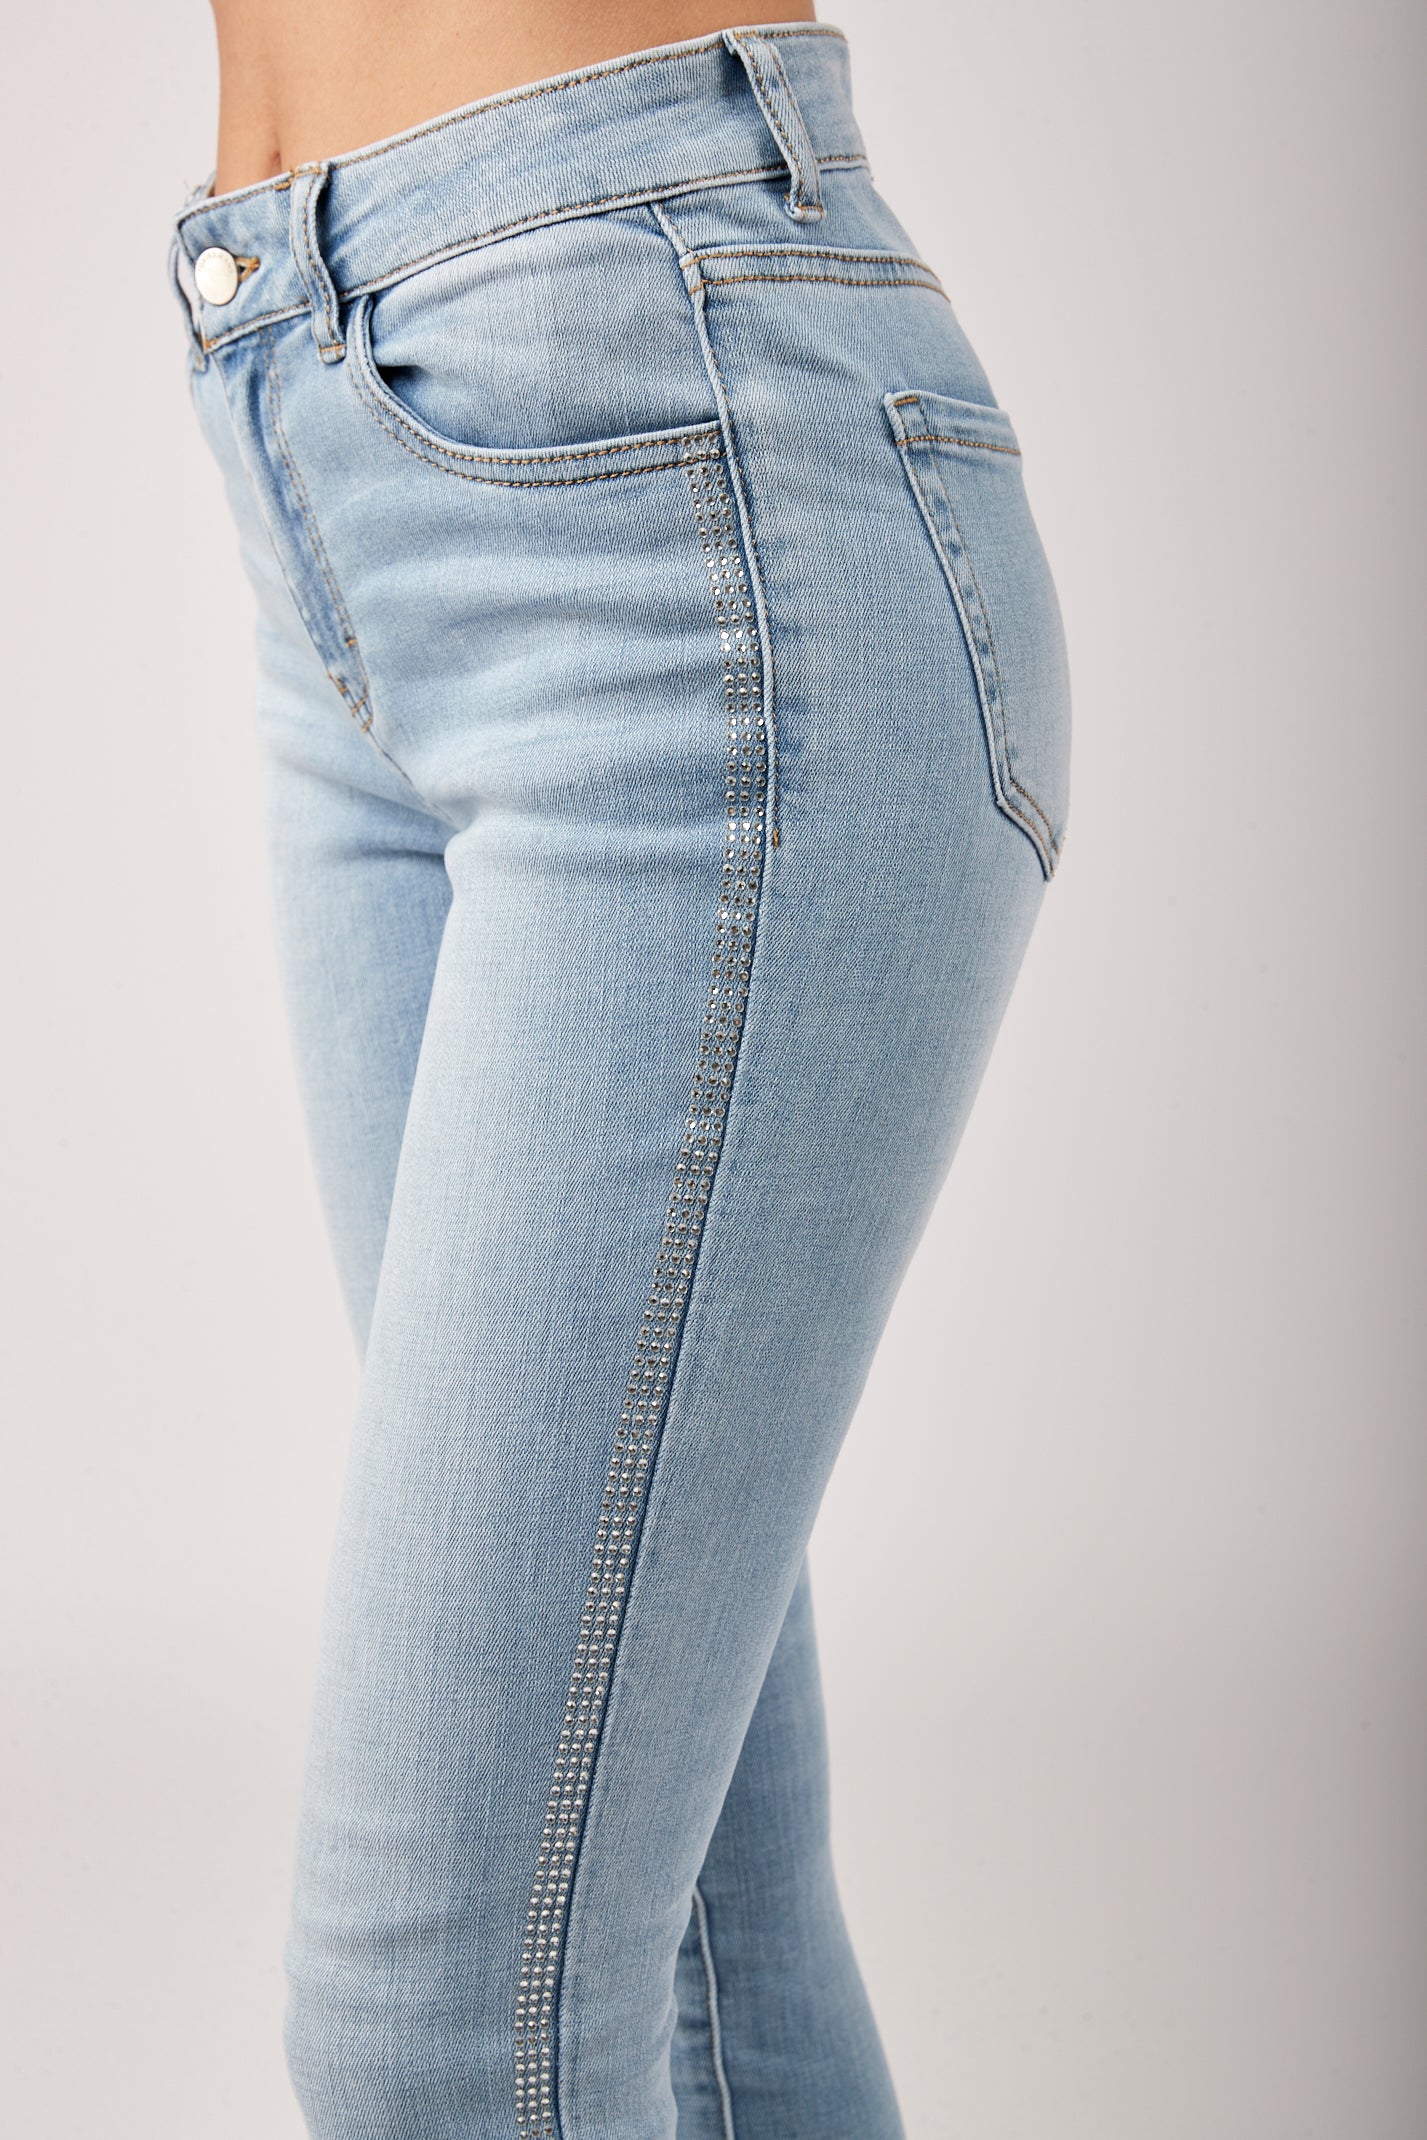 Jeans schlanker Strassstein - Großbritannien